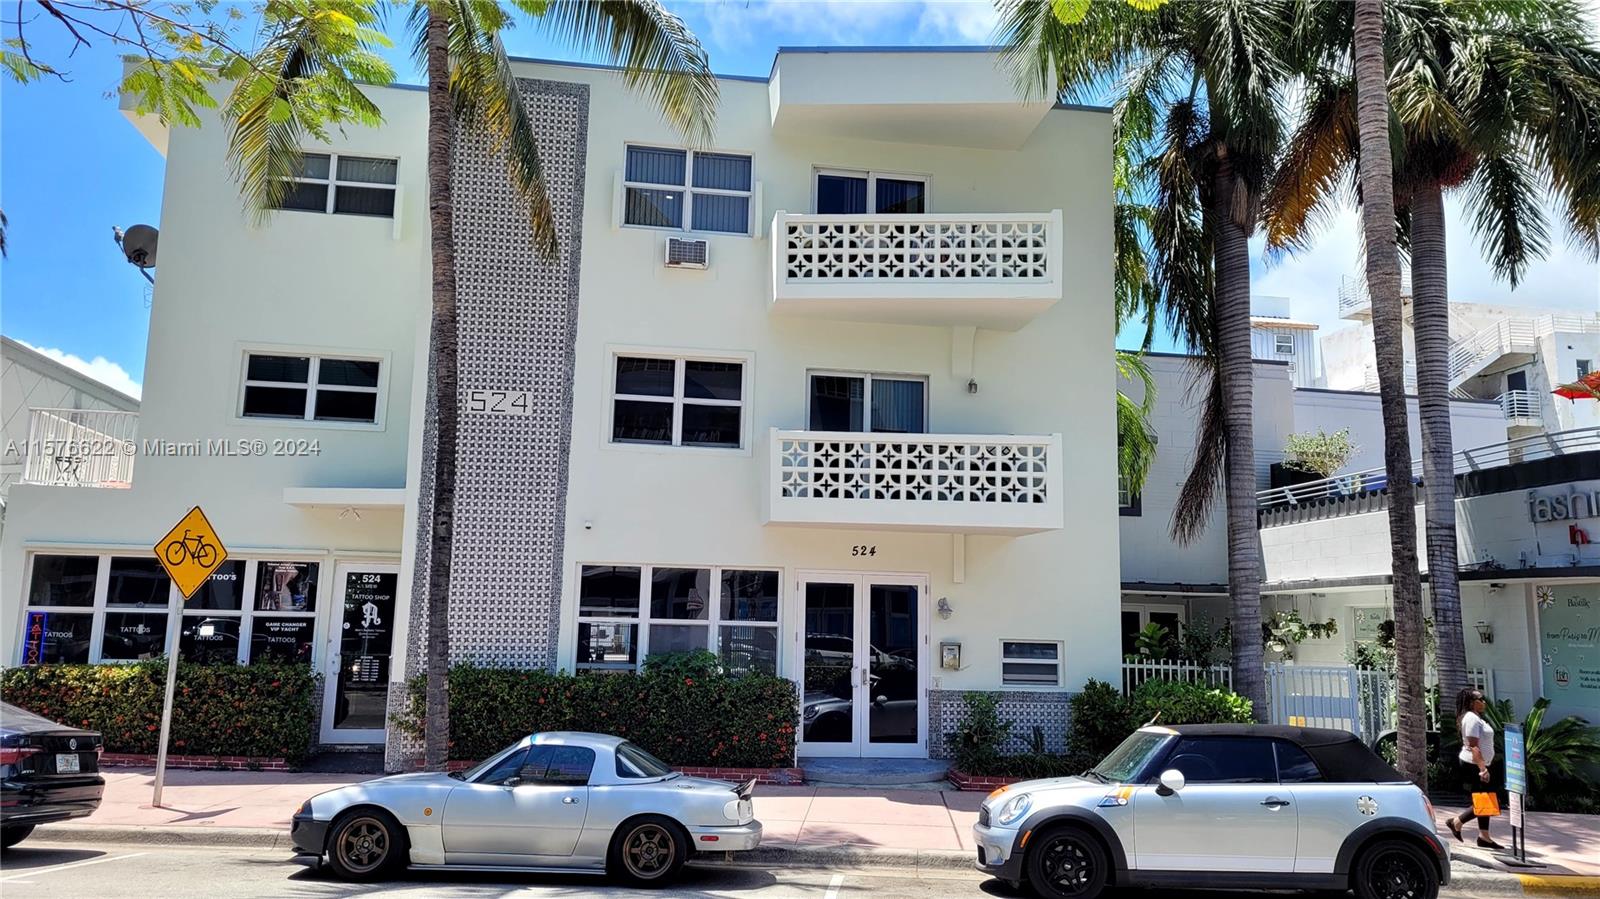 Rental Property at 524 Washington Ave 213, Miami Beach, Miami-Dade County, Florida - Bedrooms: 1 
Bathrooms: 1  - $1,900 MO.